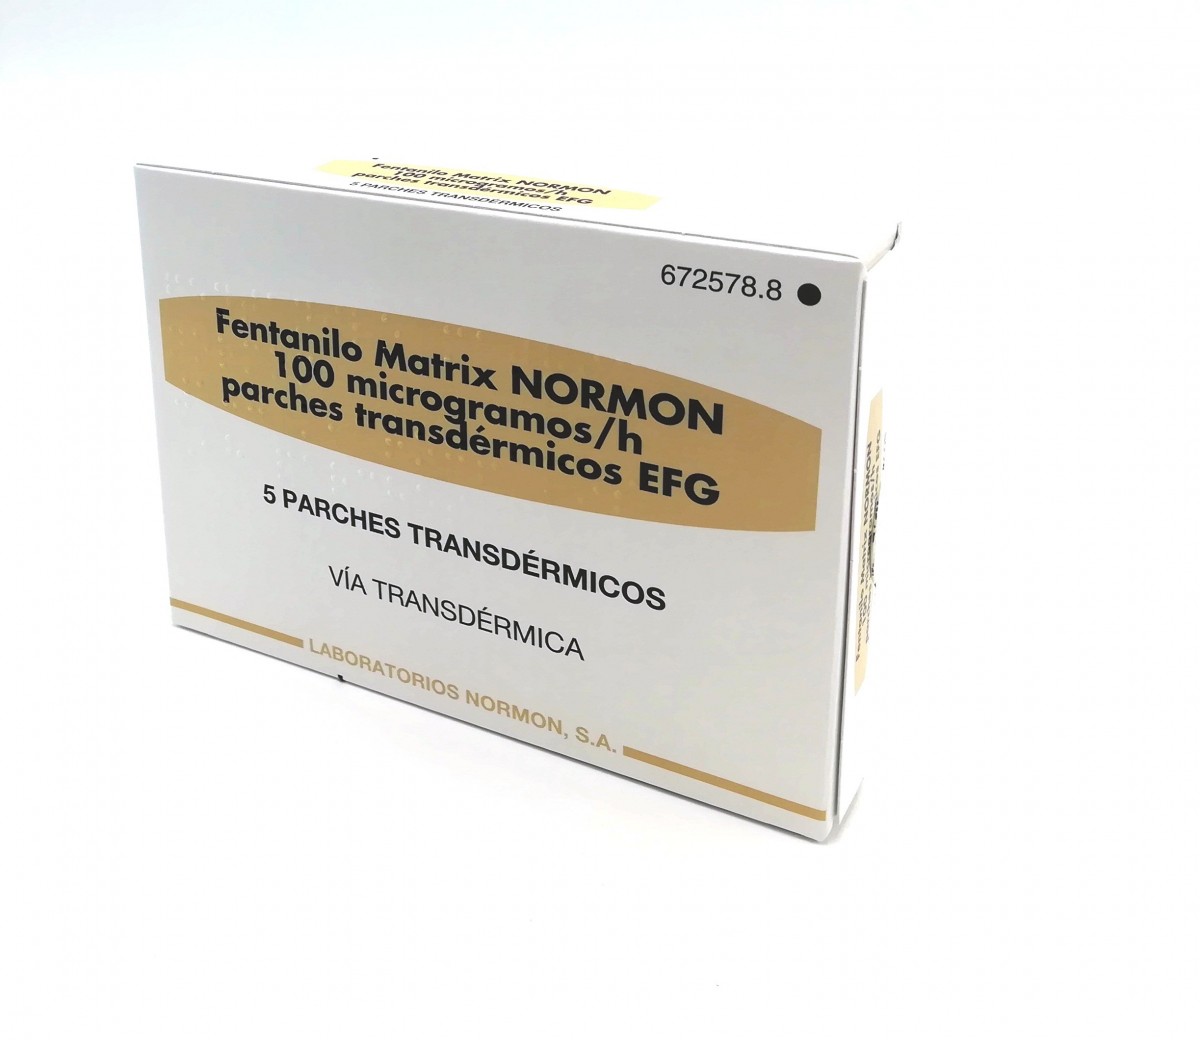 FENTANILO MATRIX NORMON 100 microgramos/H PARCHES TRANSDERMICOS EFG, 5 parches fotografía del envase.